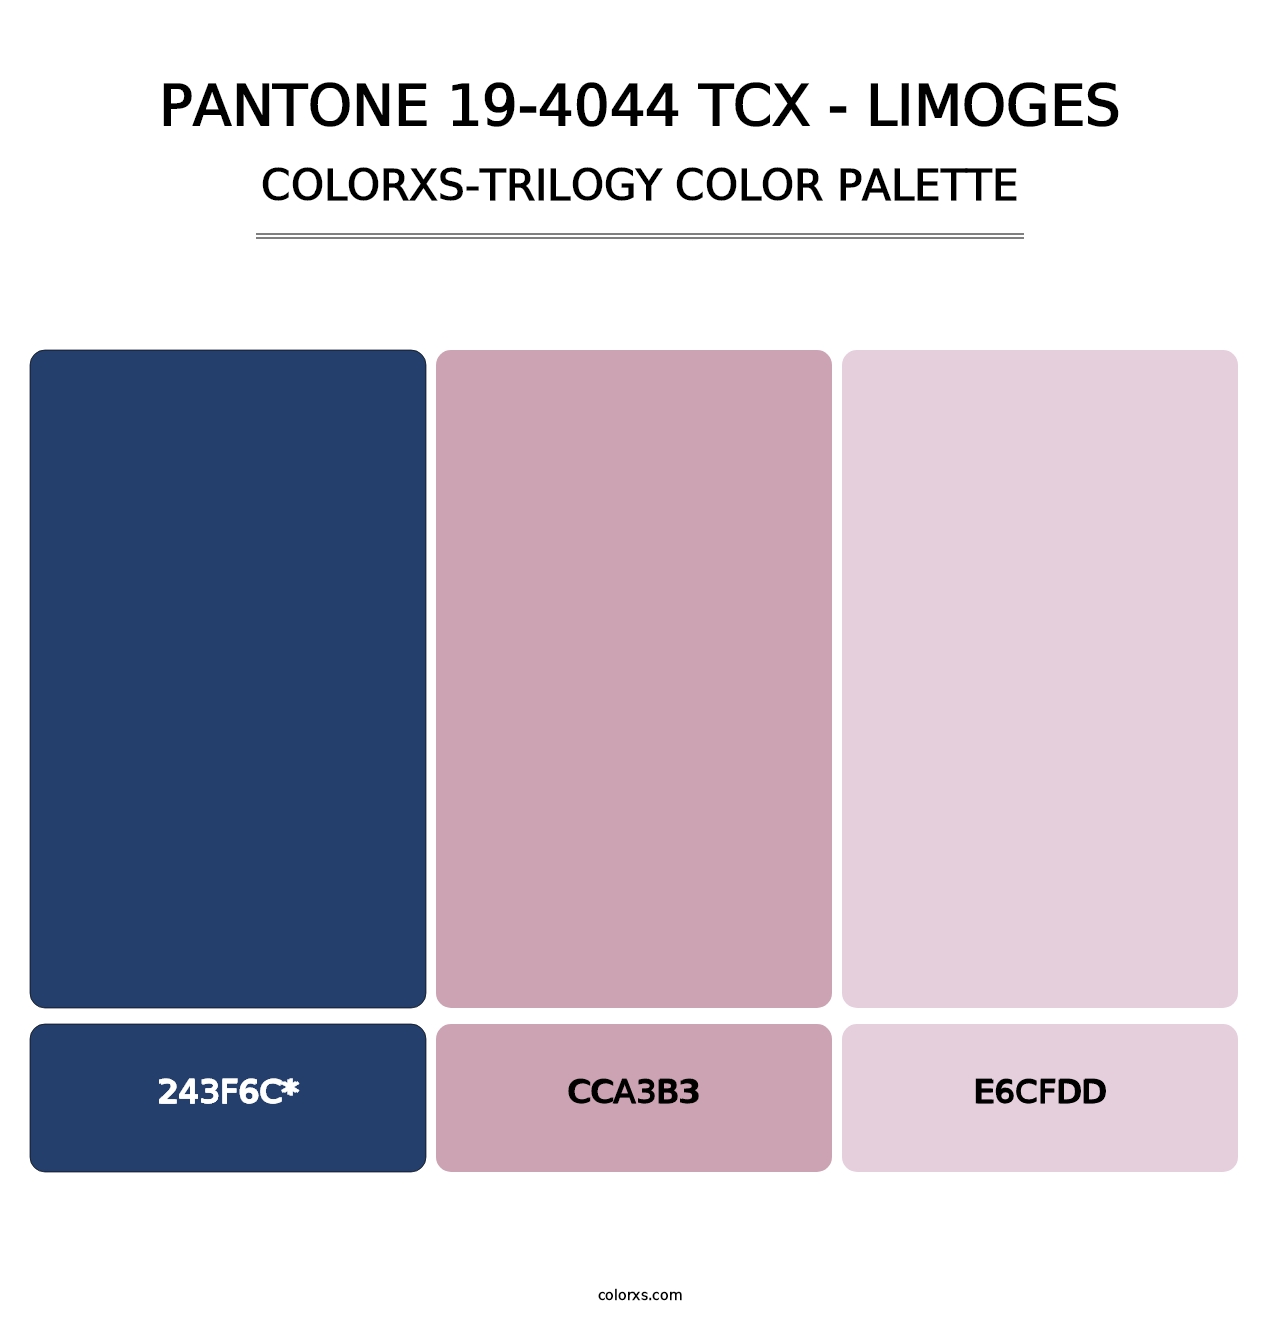 PANTONE 19-4044 TCX - Limoges - Colorxs Trilogy Palette